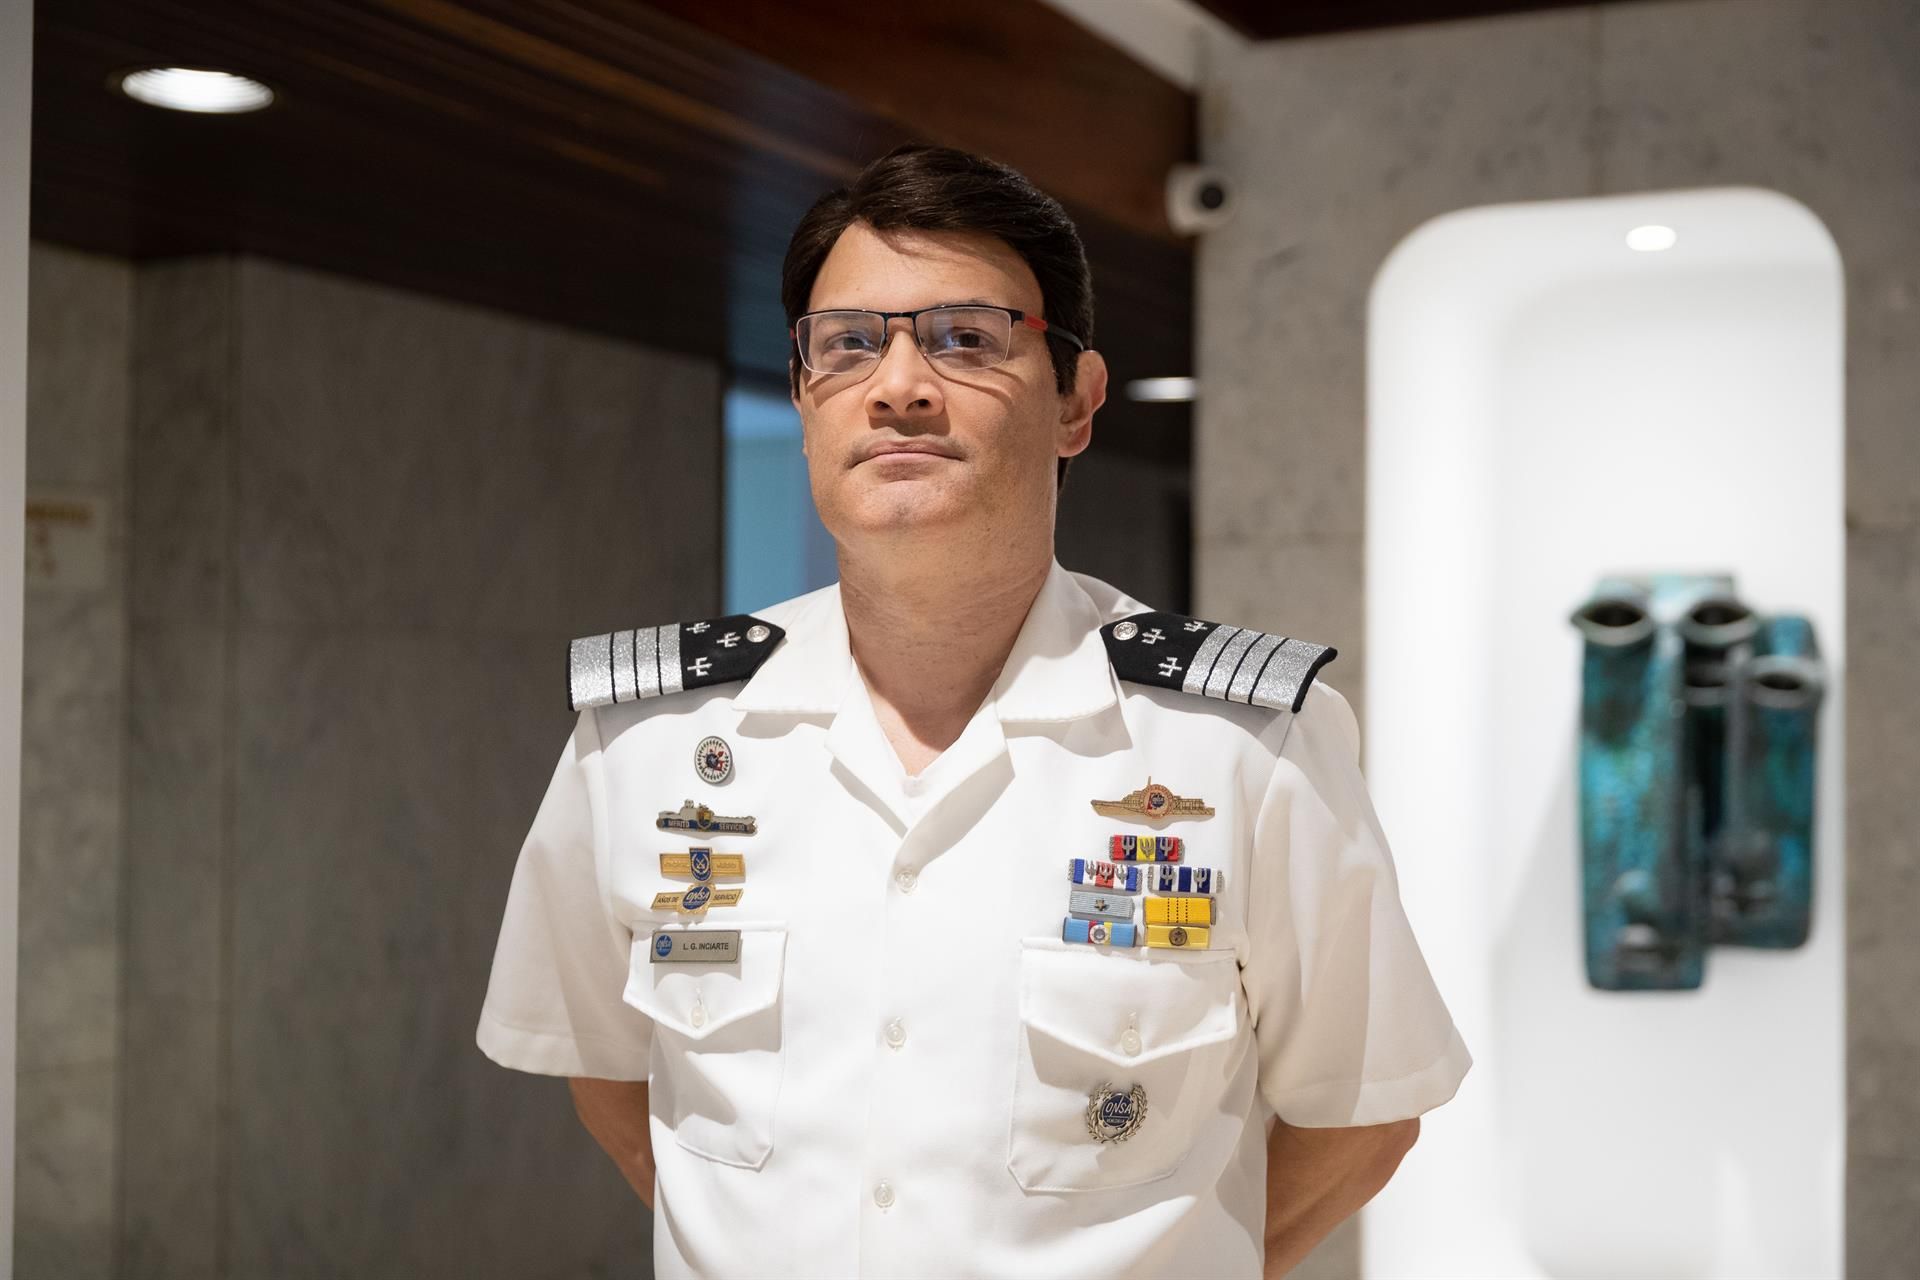 Commodore Luis Inicarte poseert tijdens een interview met Efe op 16 september 2022 in Caracas, Venezuela.  EFE / Rainer Peña R.